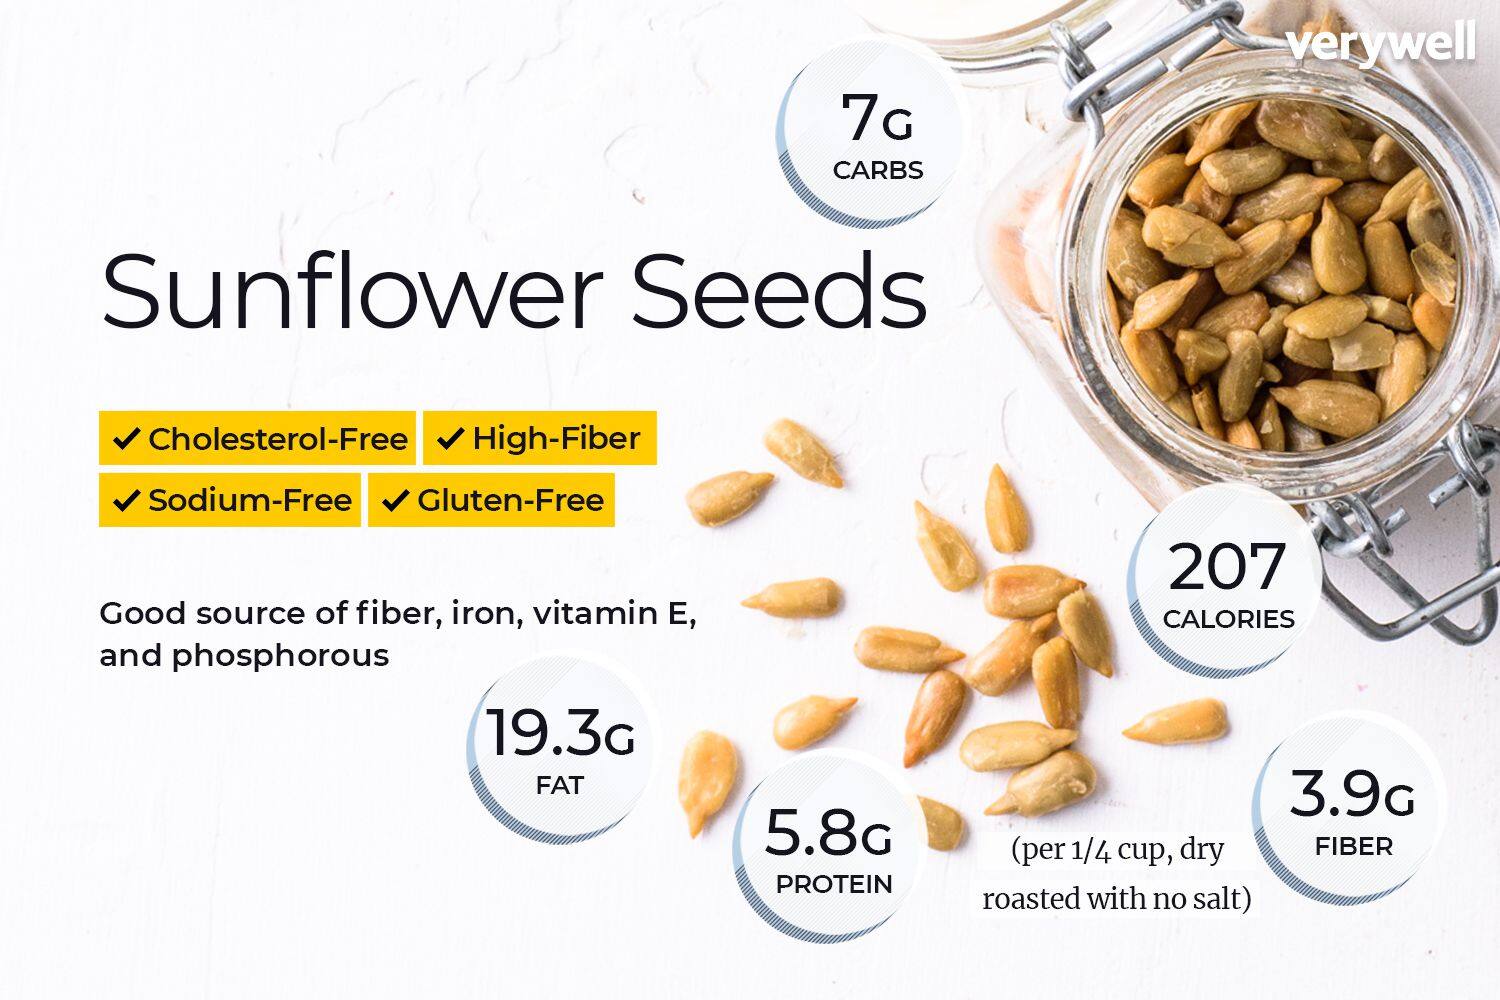 [Sunflower Seed] 500g Sunflower Seed Raw Natural 葵花子 Biji Kuaci Bunga Matahari for Florentine Biscuit